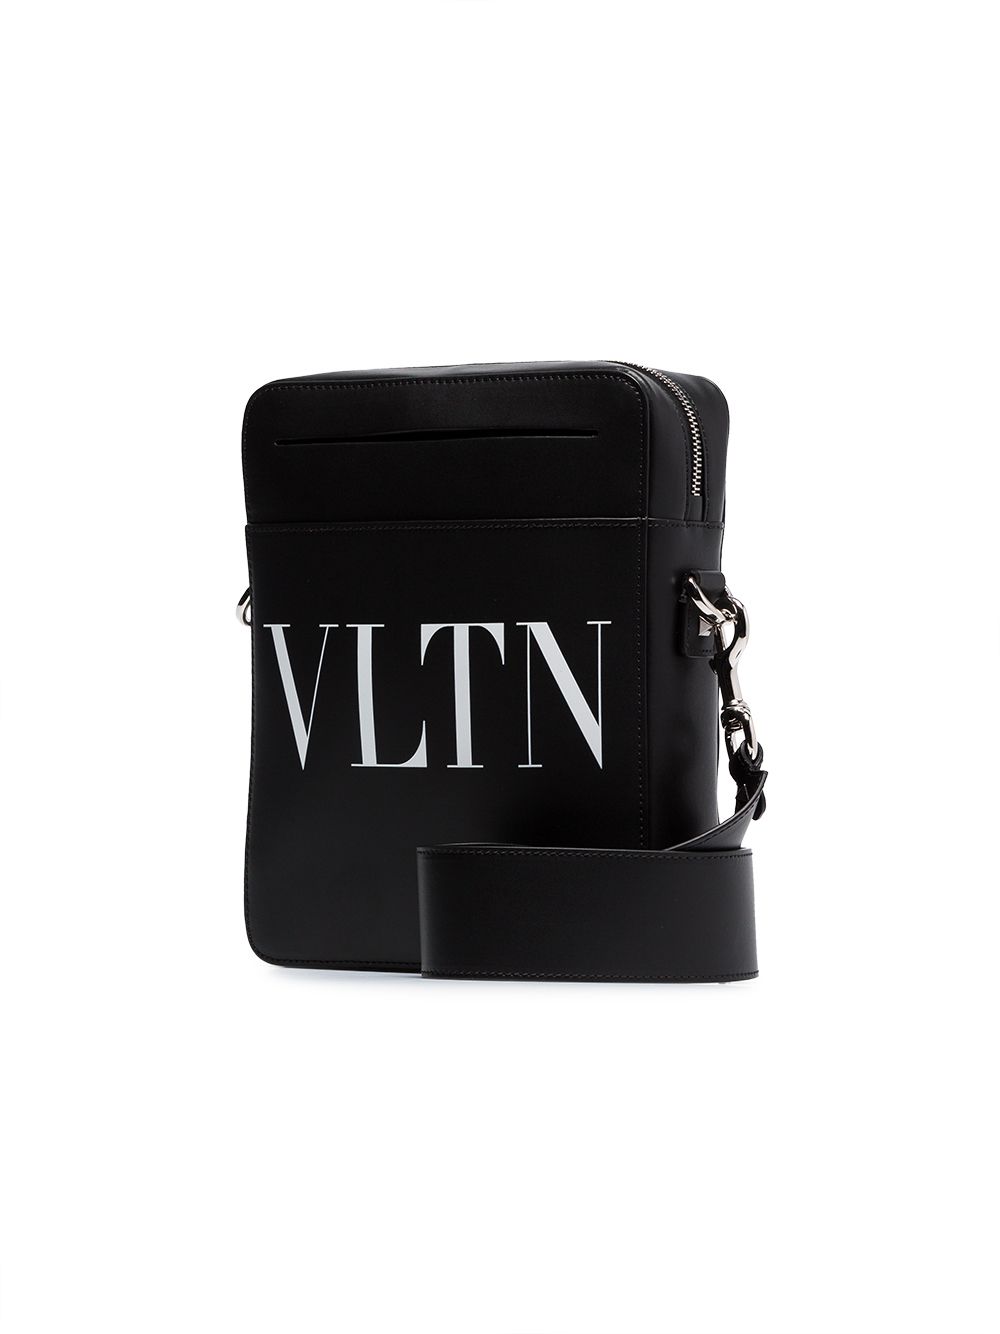 фото Valentino сумка-мессенджер 'VLTN'